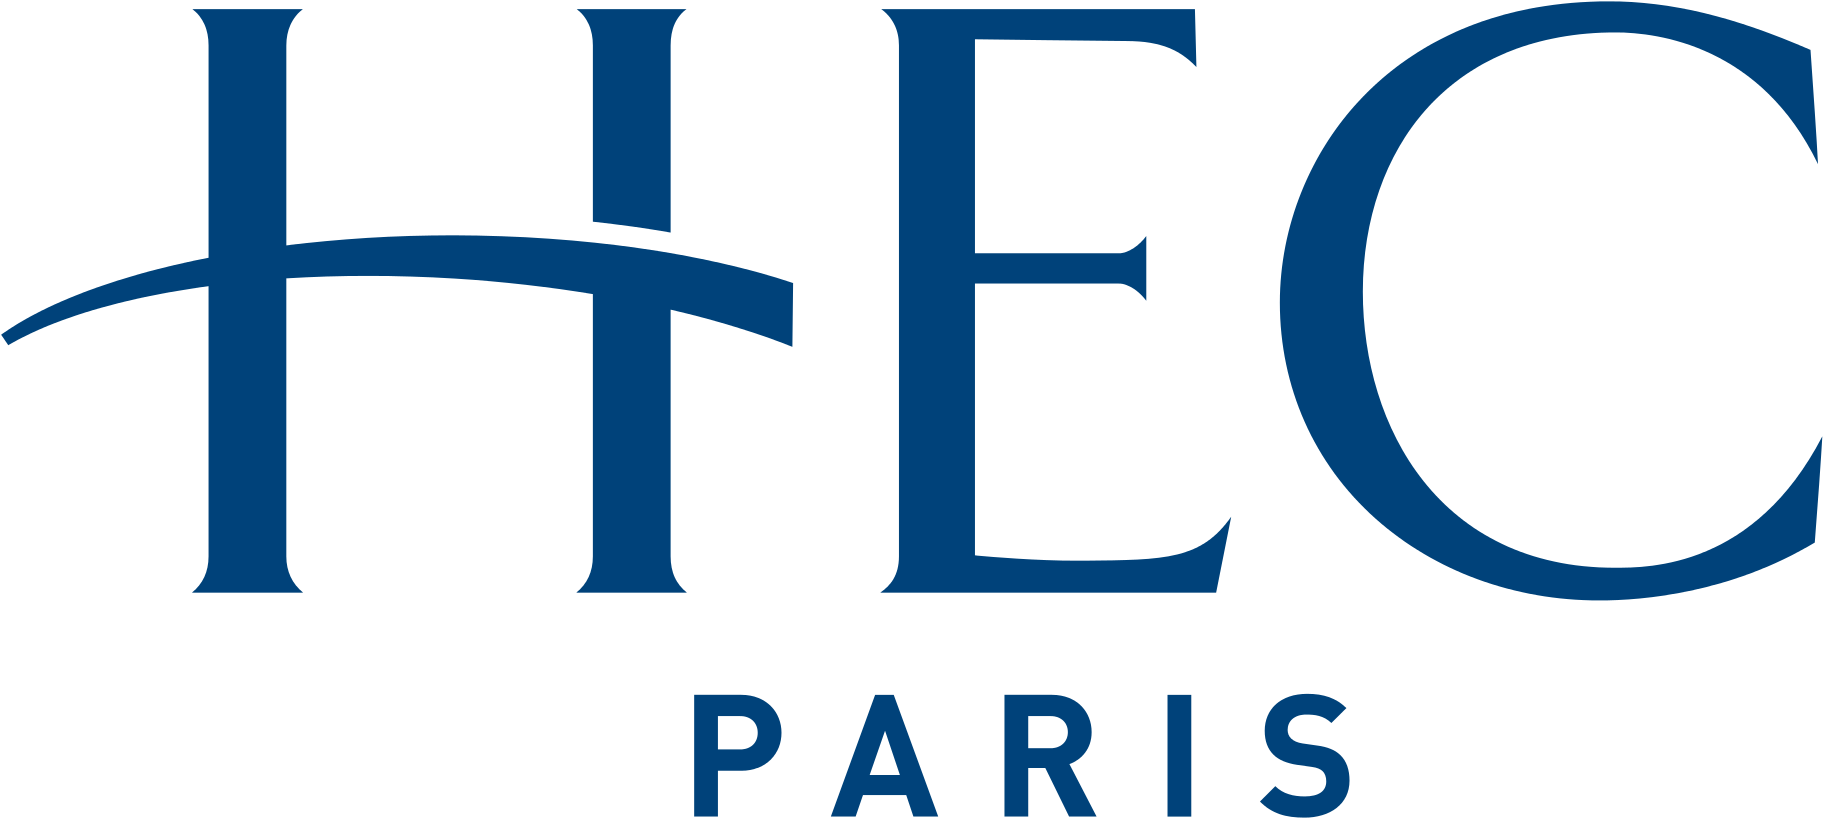 Hec - Hec Paris Logo (2000x1047), Png Download